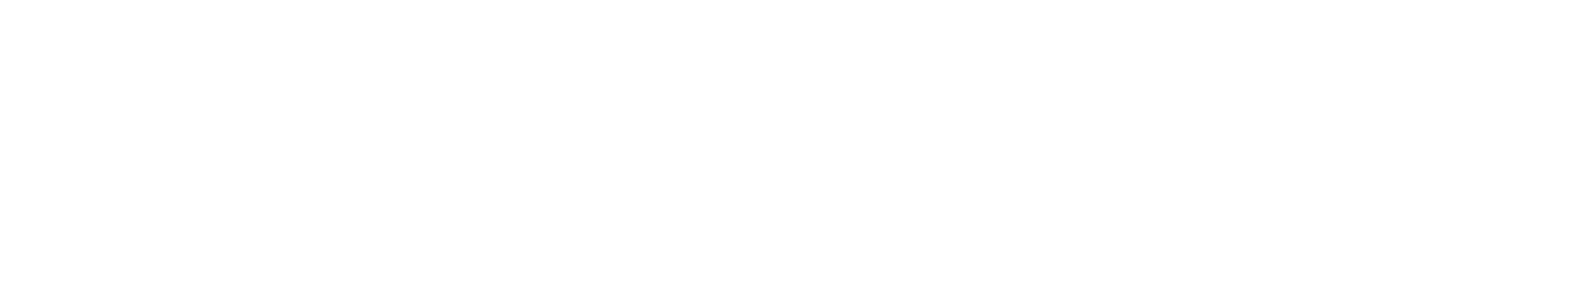 Sumo Logic logo large for dark backgrounds (transparent PNG)